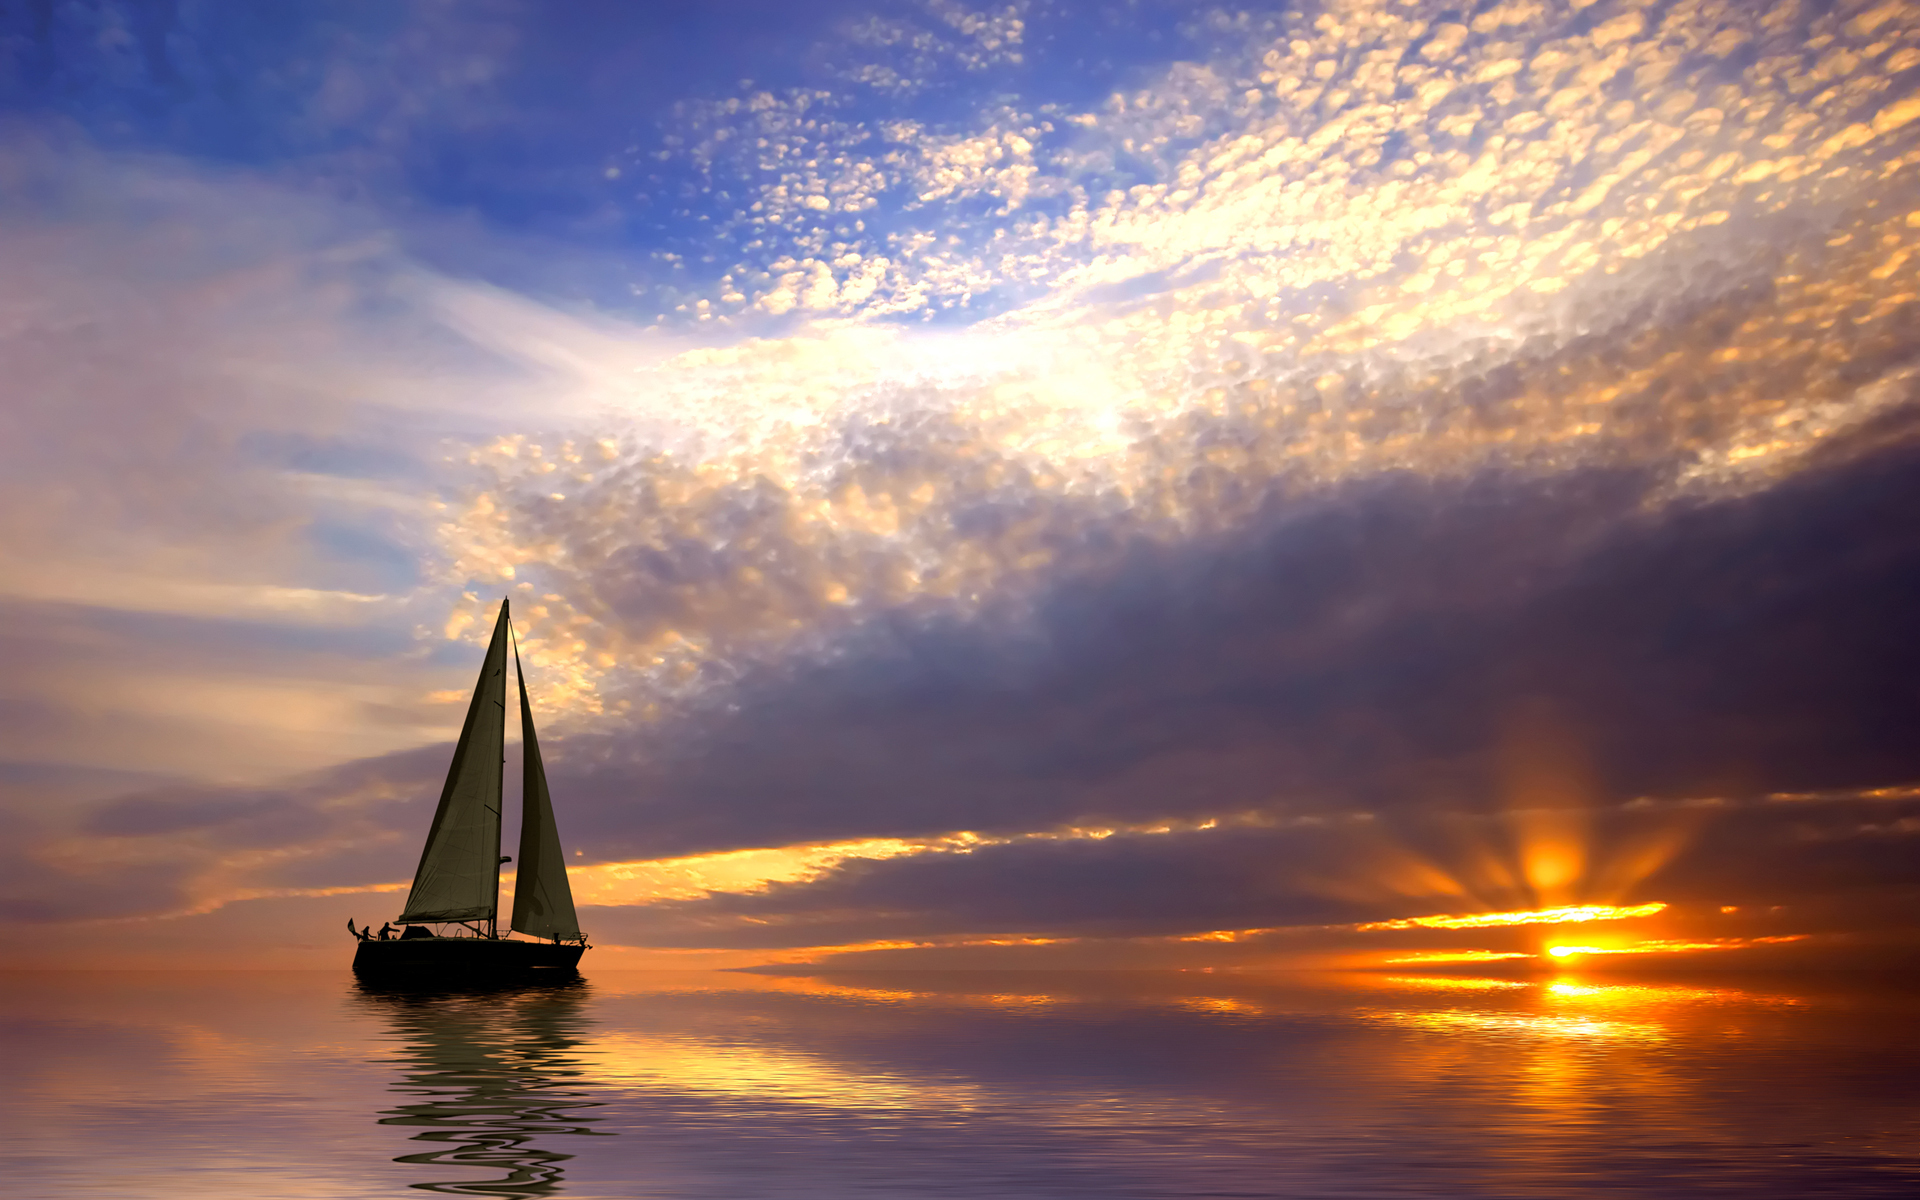 sail-boat-sailing-sea-sunset-hd-1281622